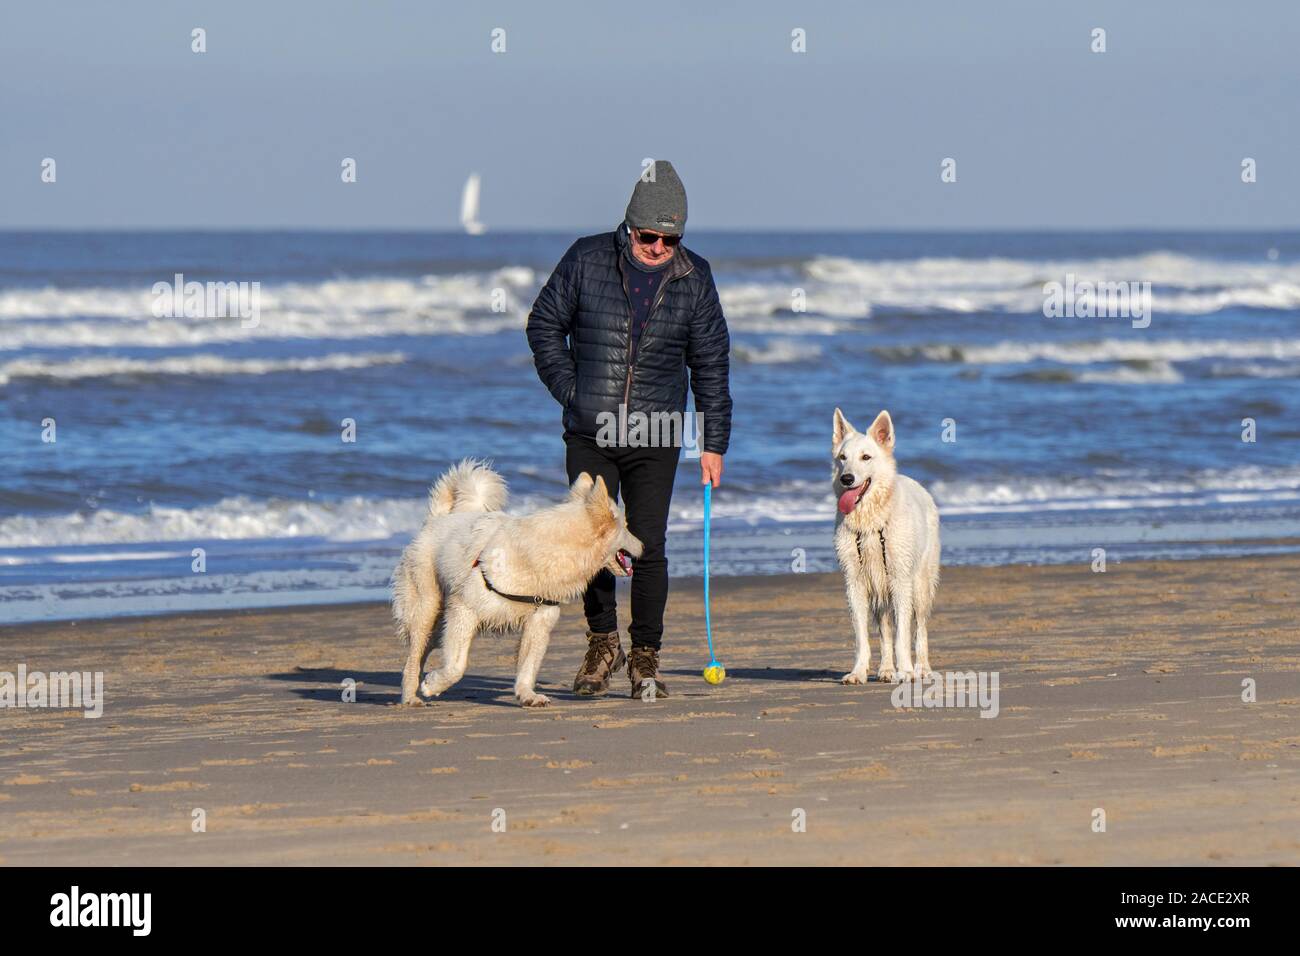 Proprietario del cane con palla da tennis launcher fetch giocando sulla spiaggia di sabbia con due scatenato Berger Blanc Suisse cani / bianco Svizzero di pastori Foto Stock